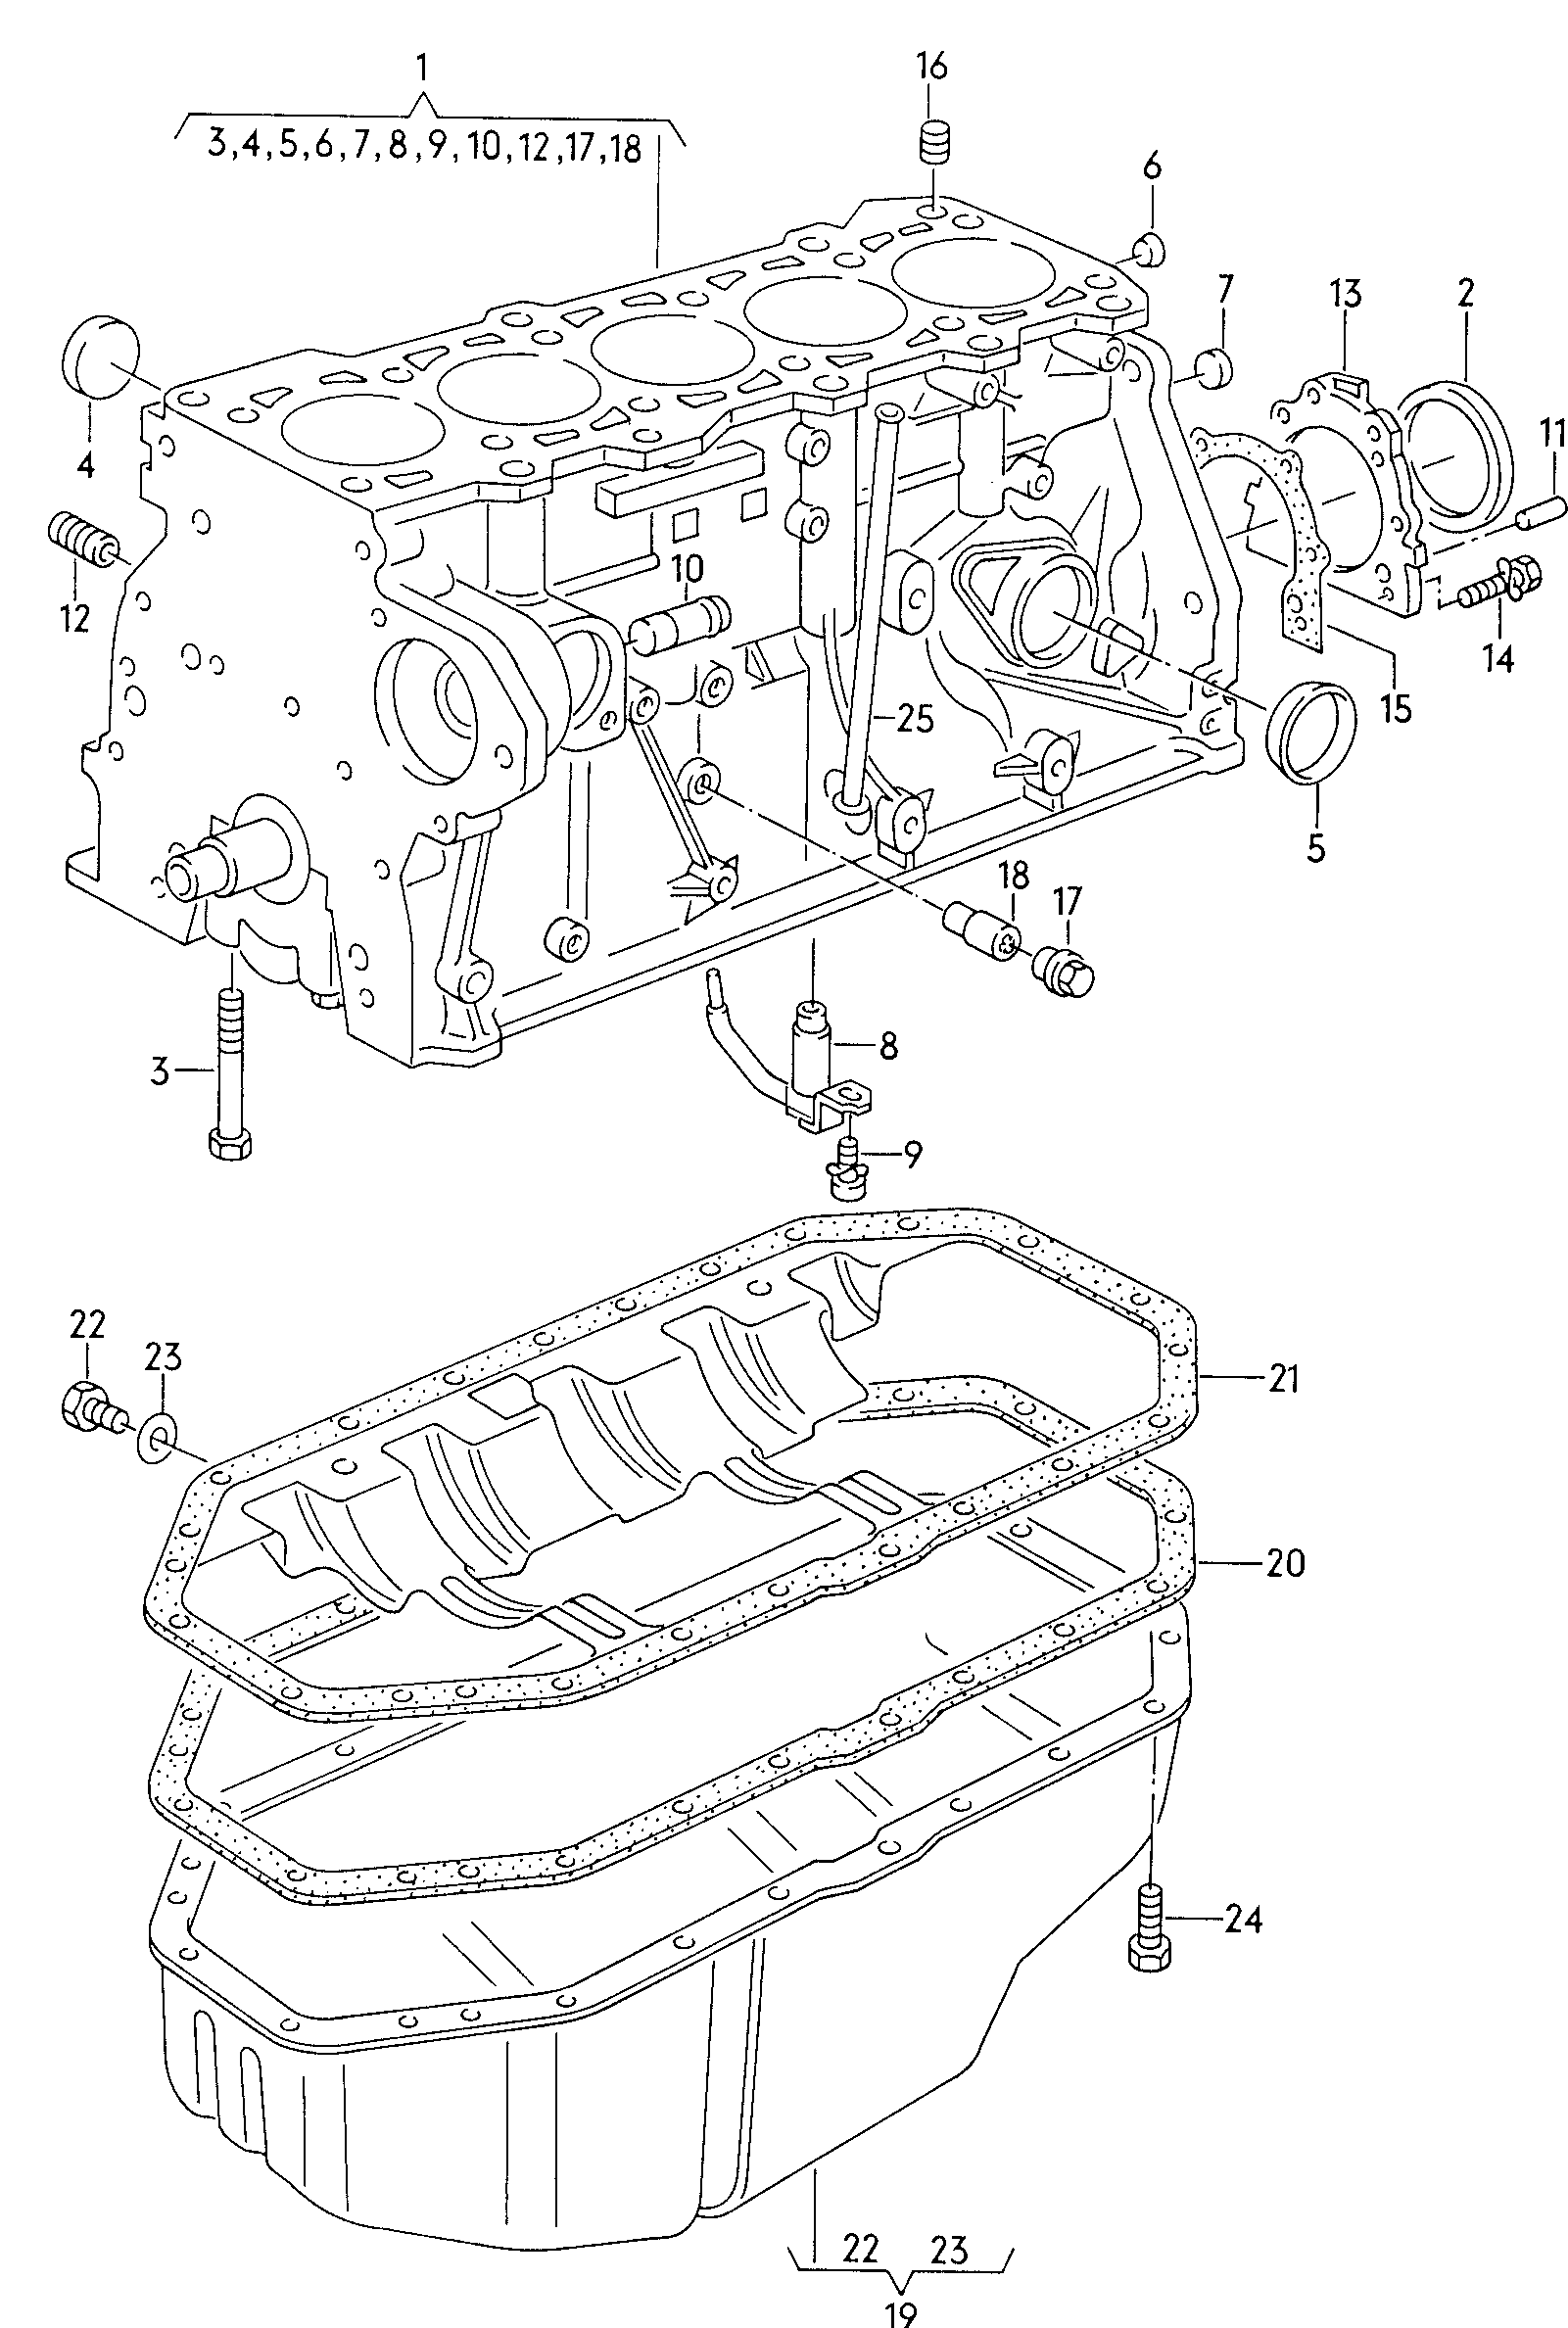 blok silnika z tlokamimiska olejowa 2,0-2,5 ltr. - Audi 100/Avant - a100